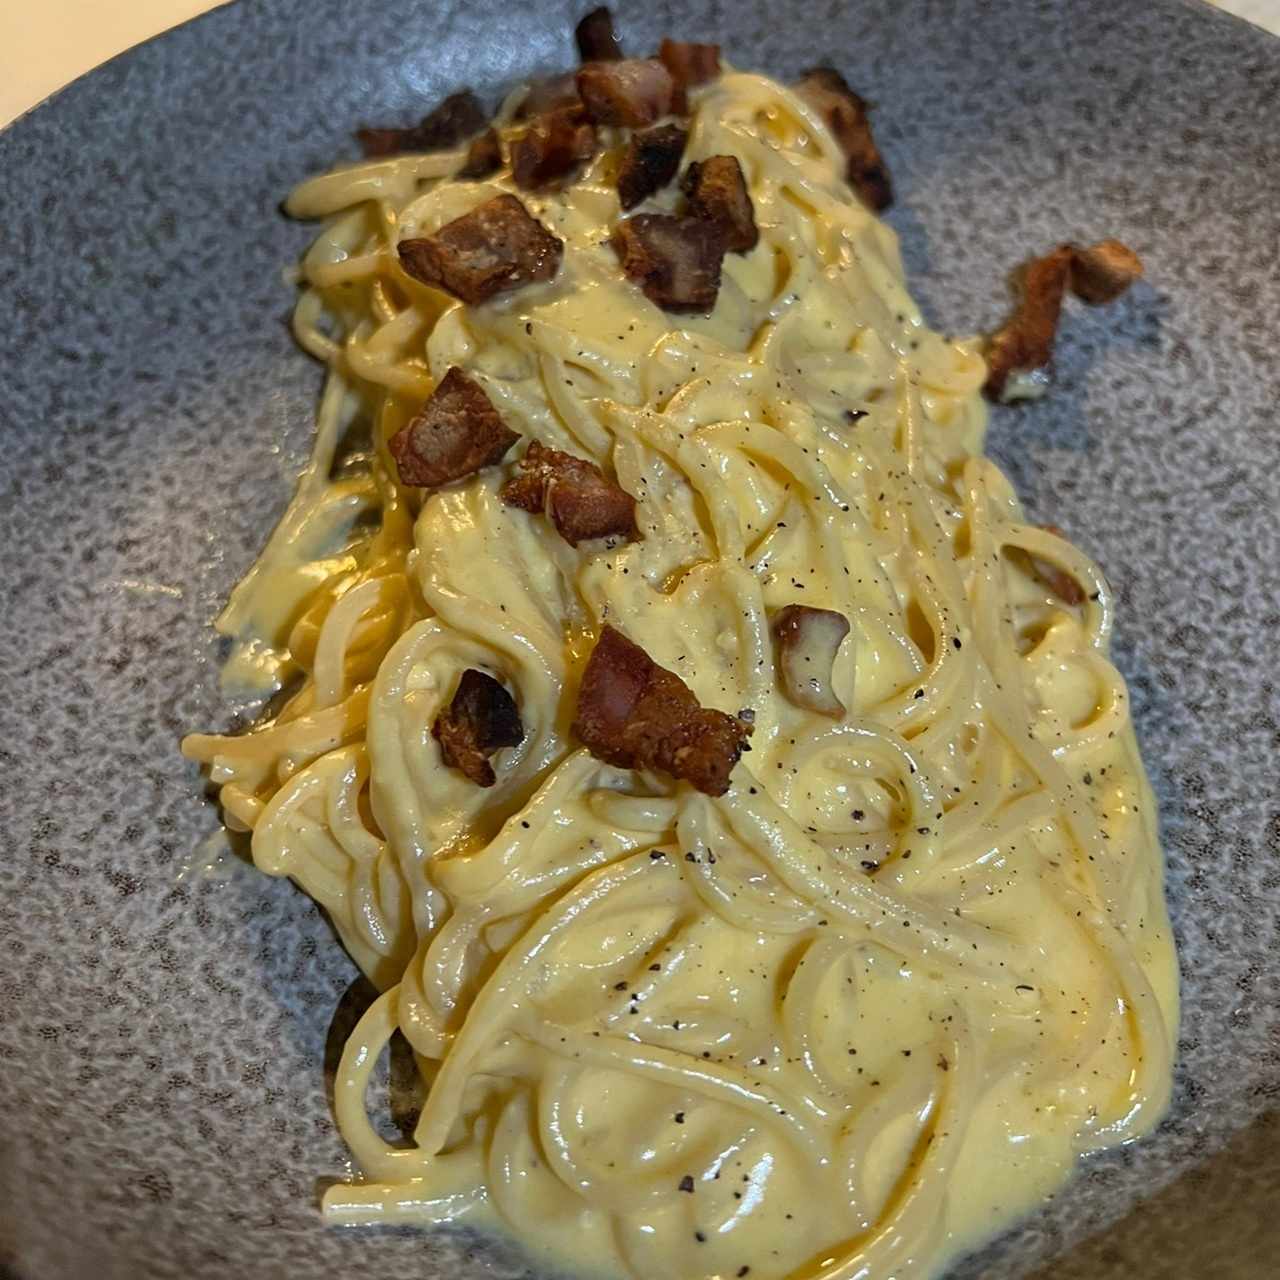 Primi Piatti - Spaghetti Alla Carbonara